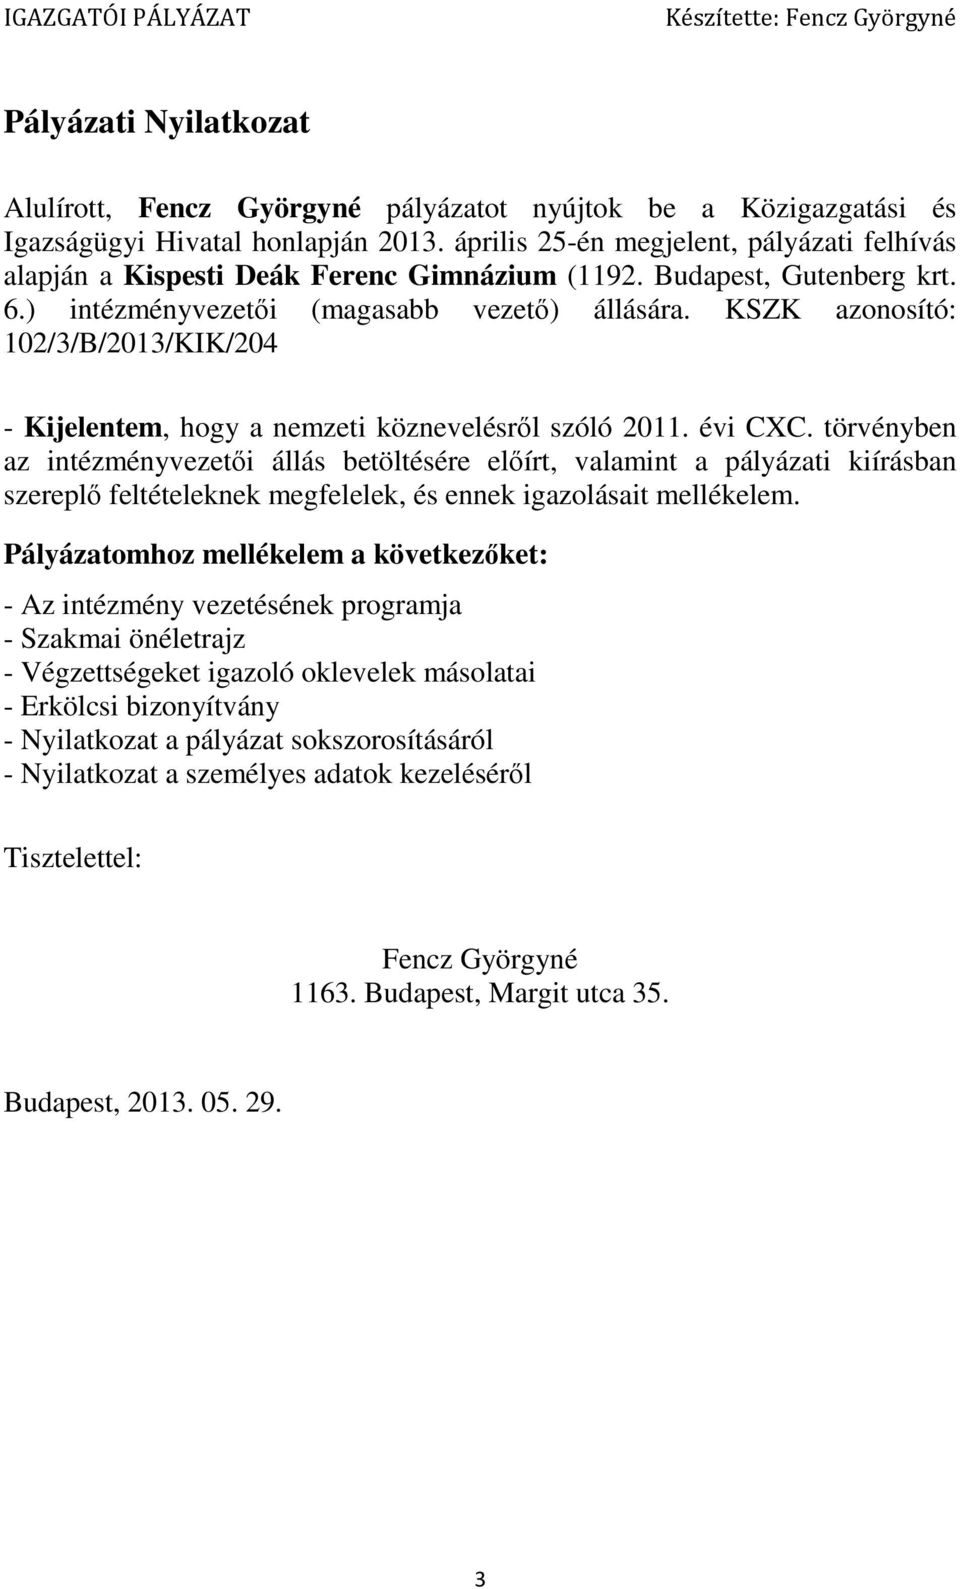 KSZK azonosító: 102/3/B/2013/KIK/204 - Kijelentem, hogy a nemzeti köznevelésről szóló 2011. évi CXC.